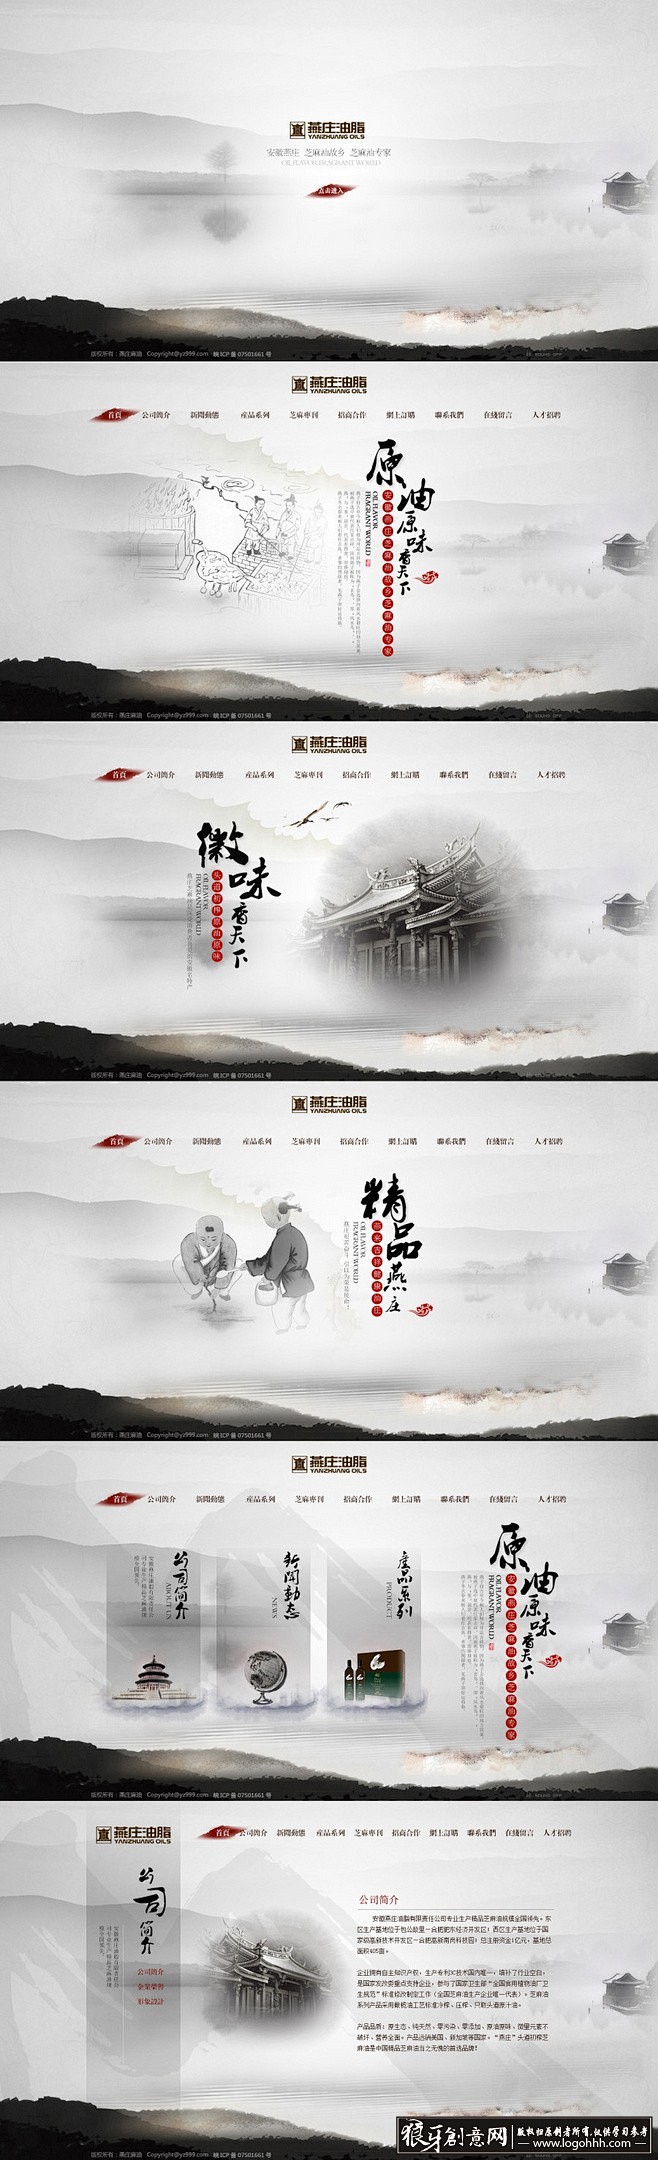 中国风 中国风公司网站页面设计 中国风创...